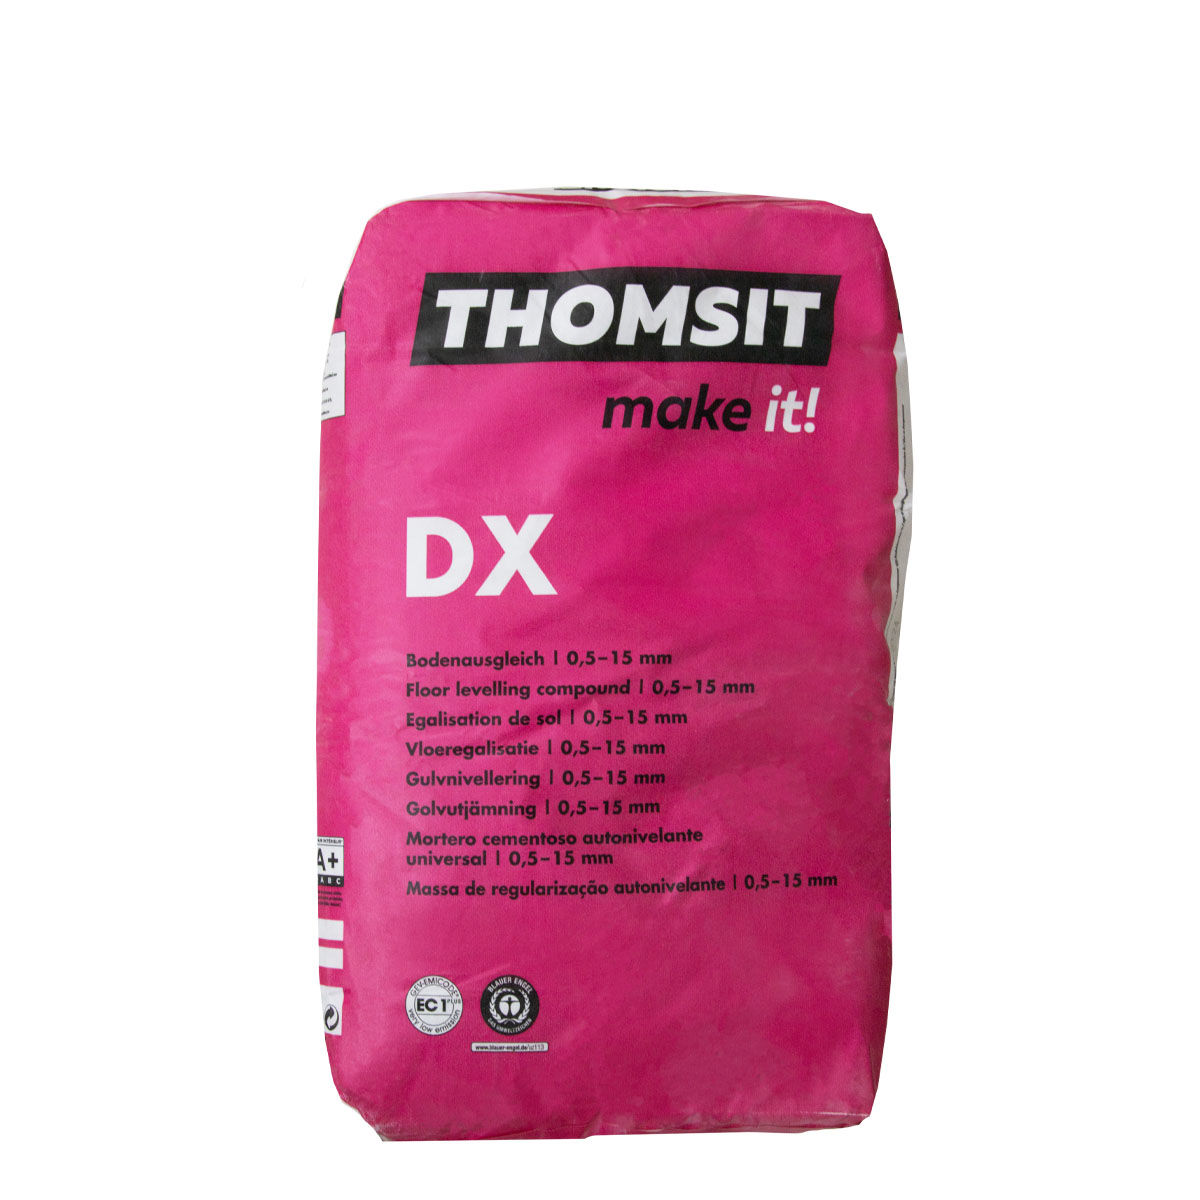 Thomsit DX Boden-Ausgleich 25kg